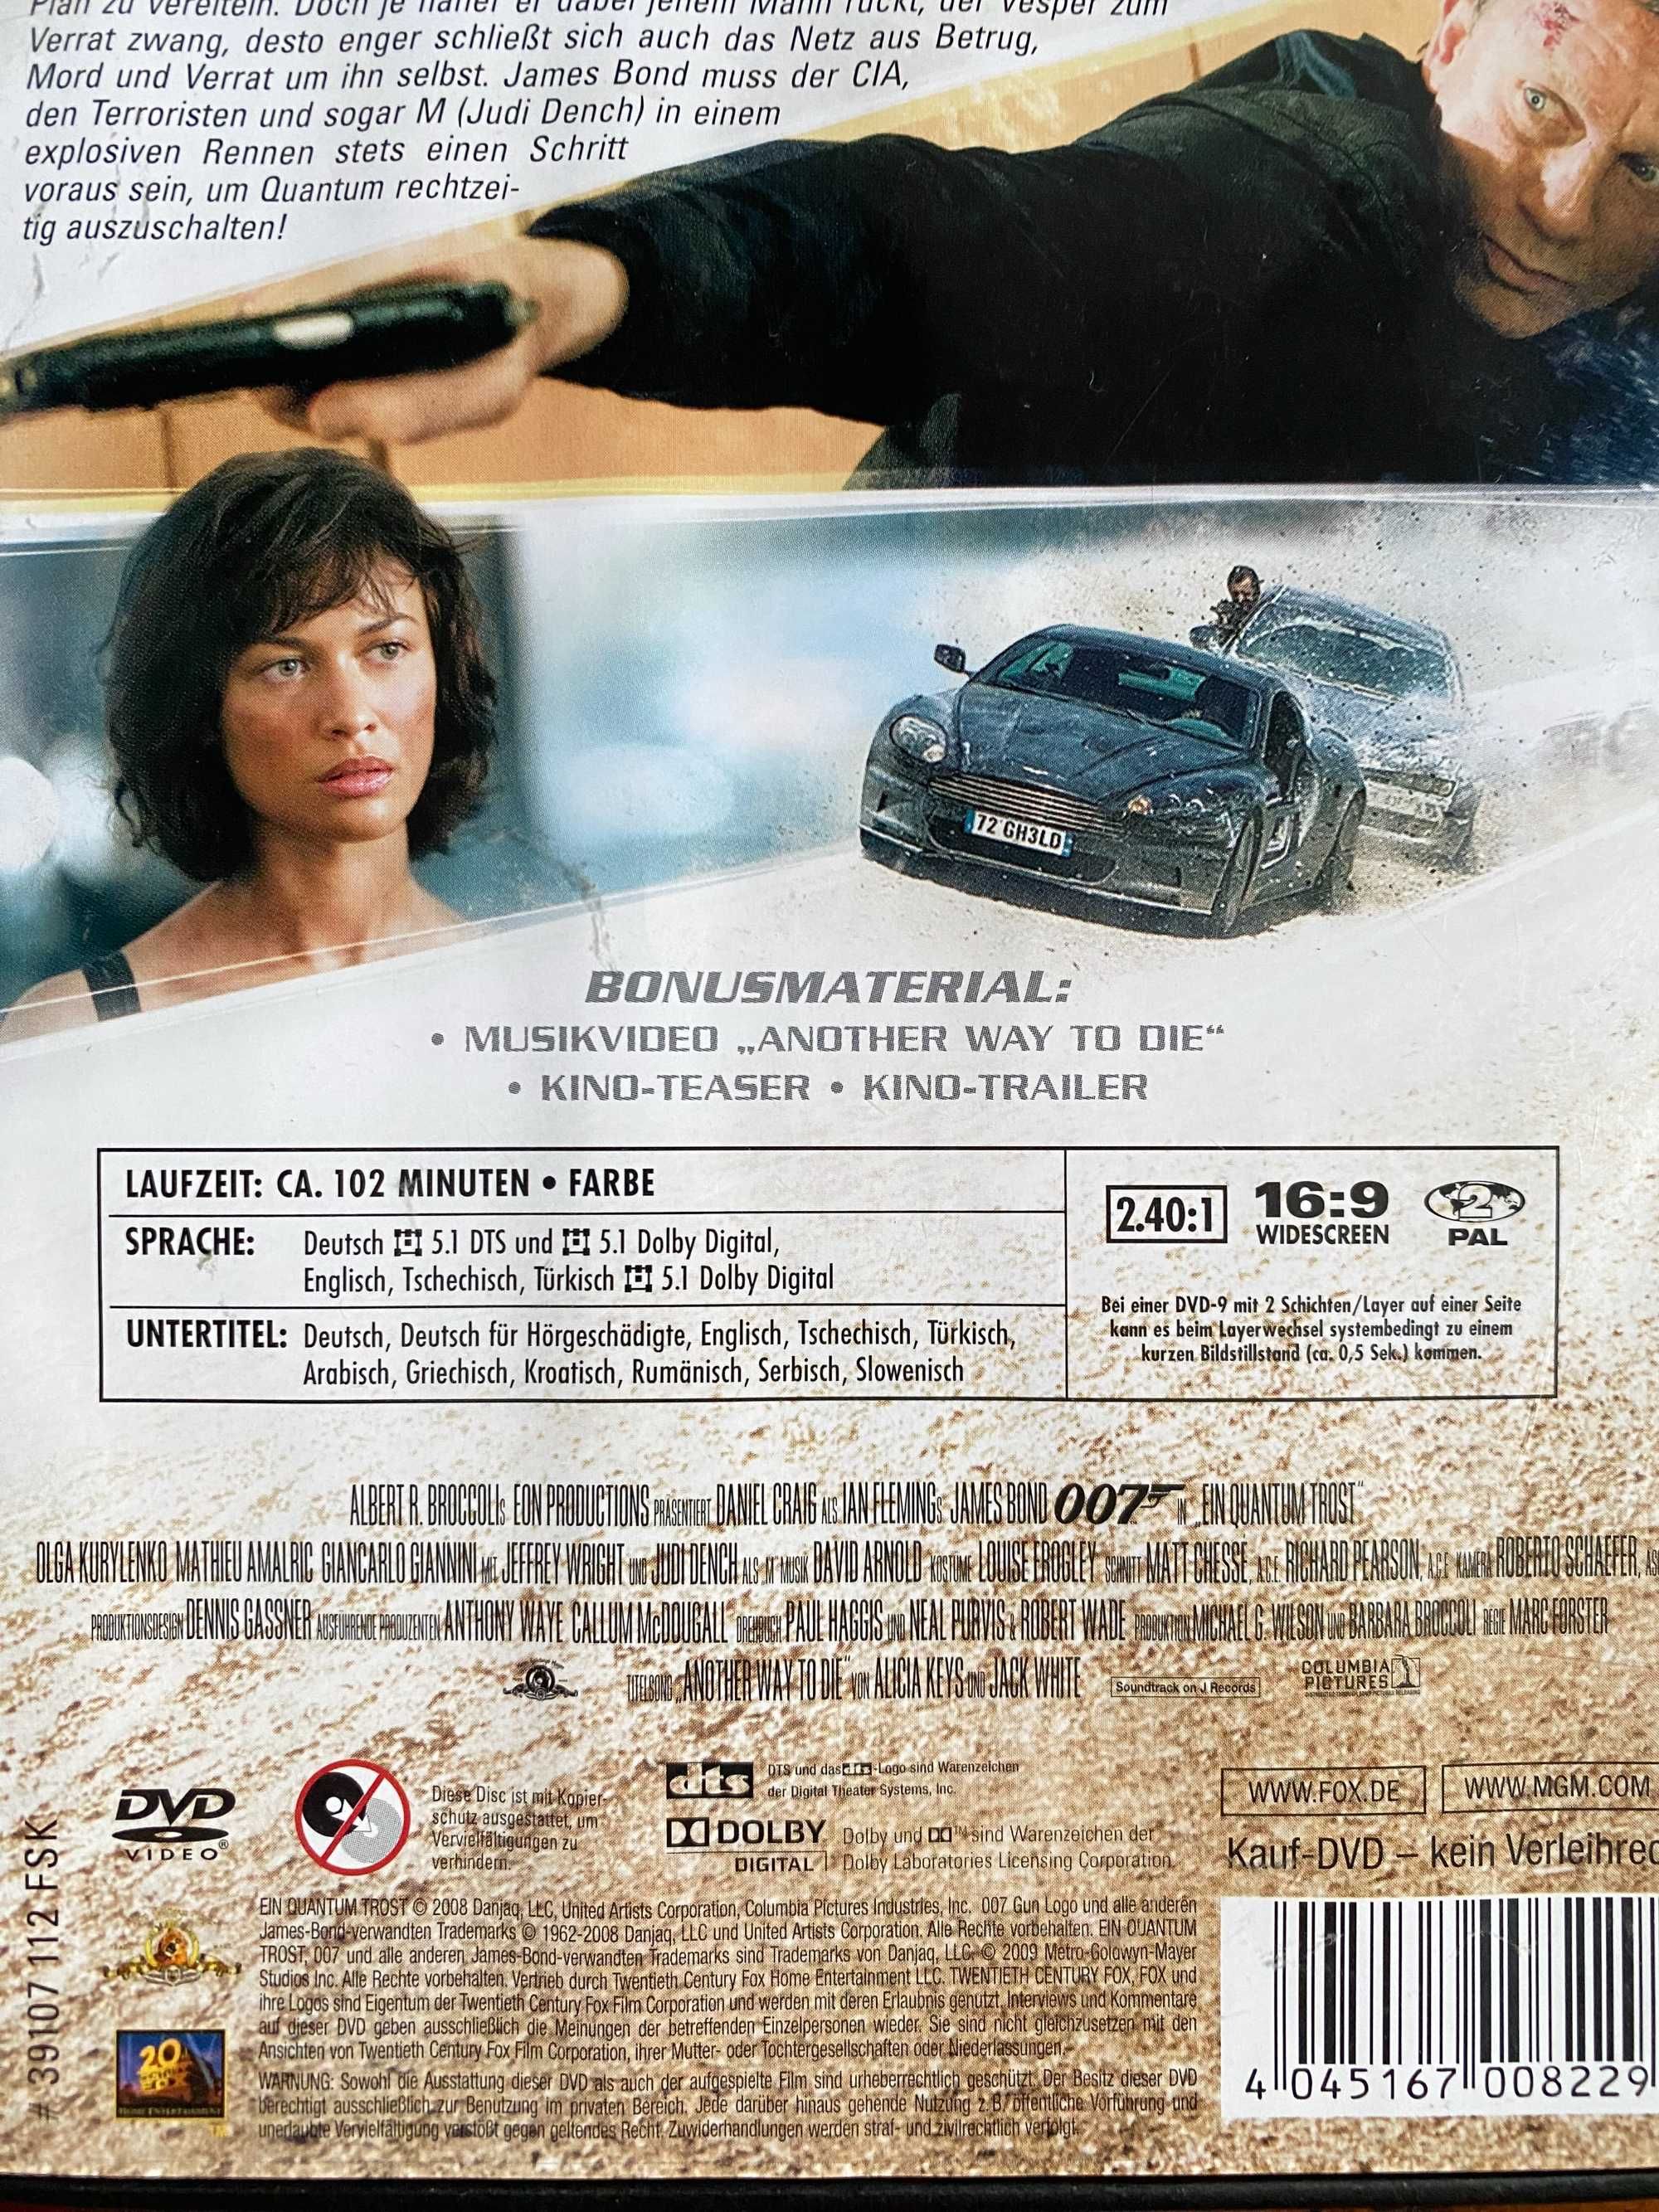 Płyta DVD film 007 Casino Royale trzy płyty Kraków